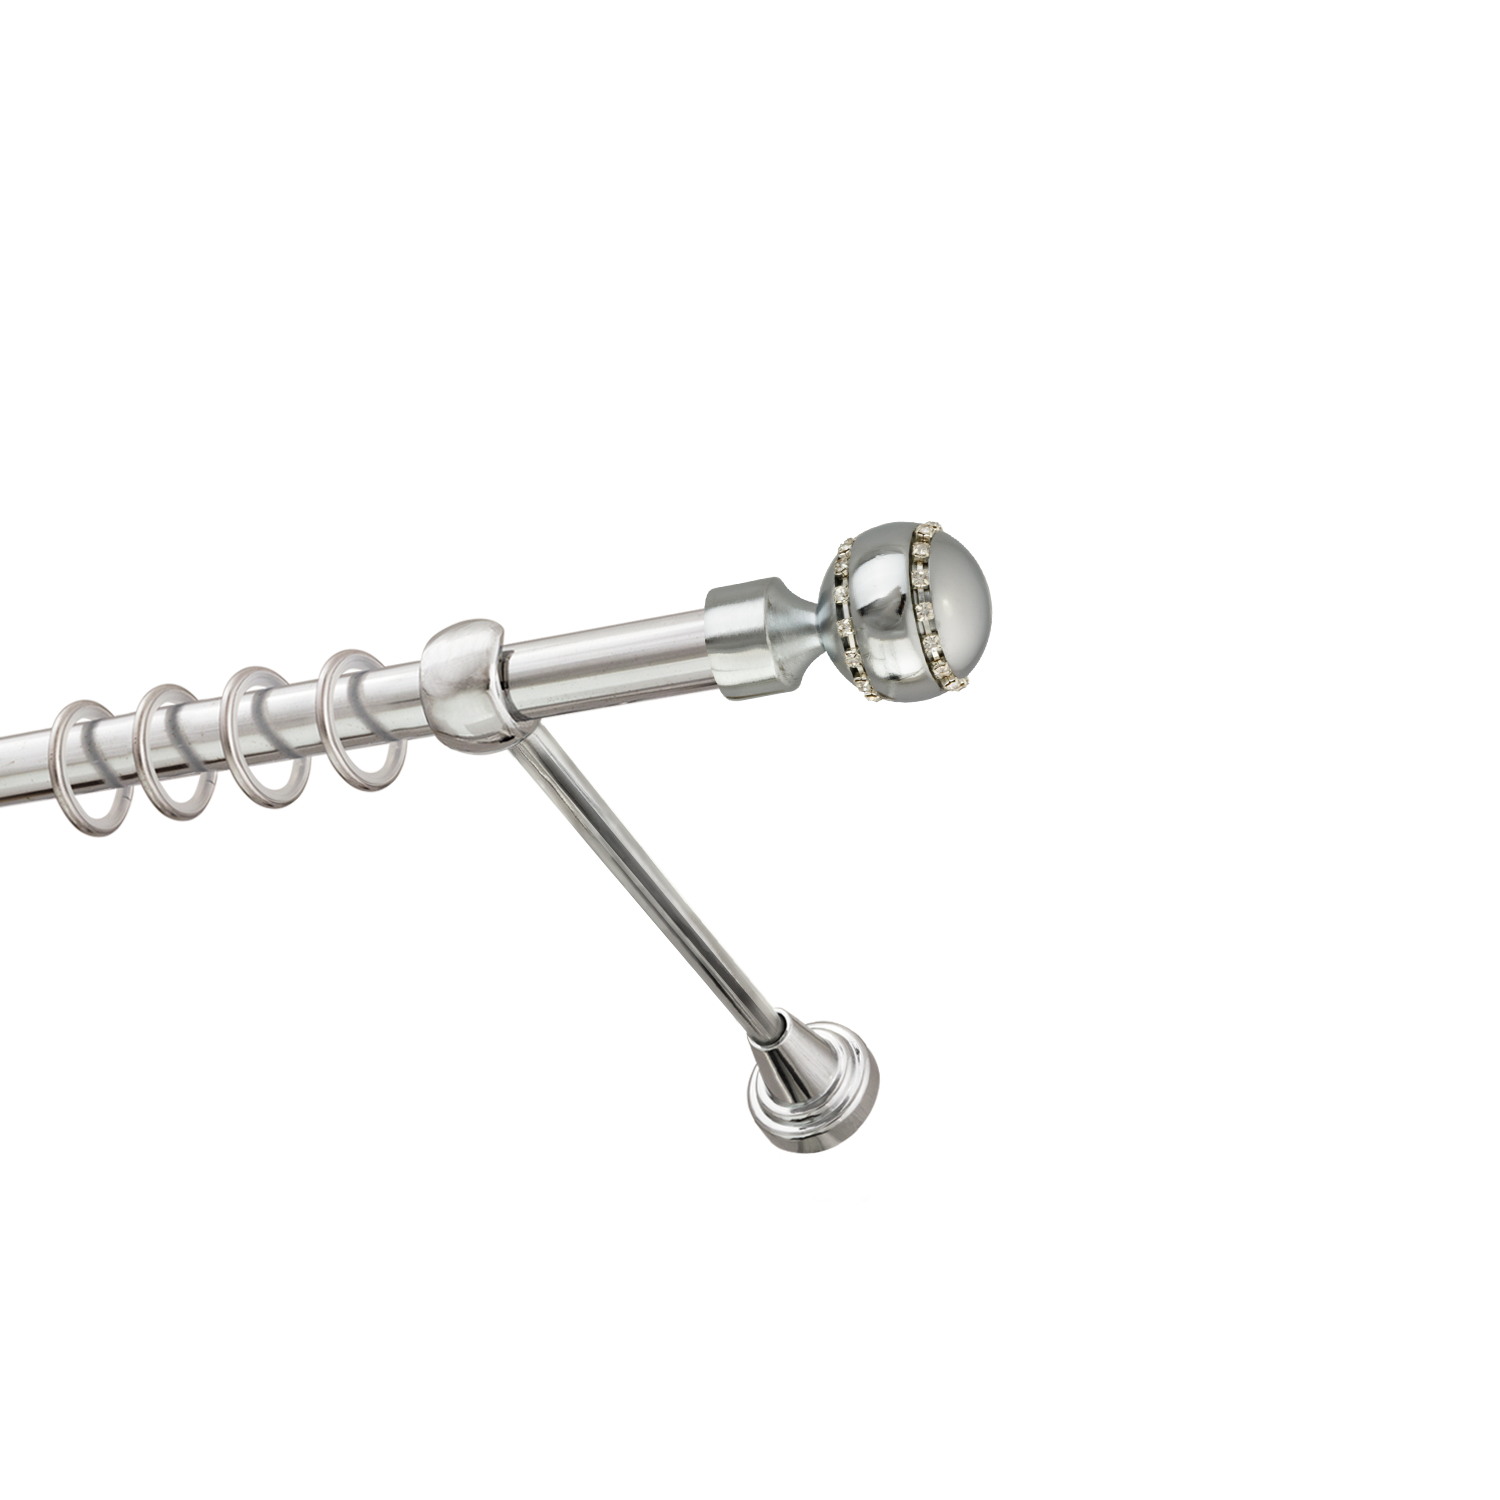 Металлический карниз для штор Модерн, однорядный 16 мм, серебро, гладкая штанга, длина 300 см - фото Wikidecor.ru